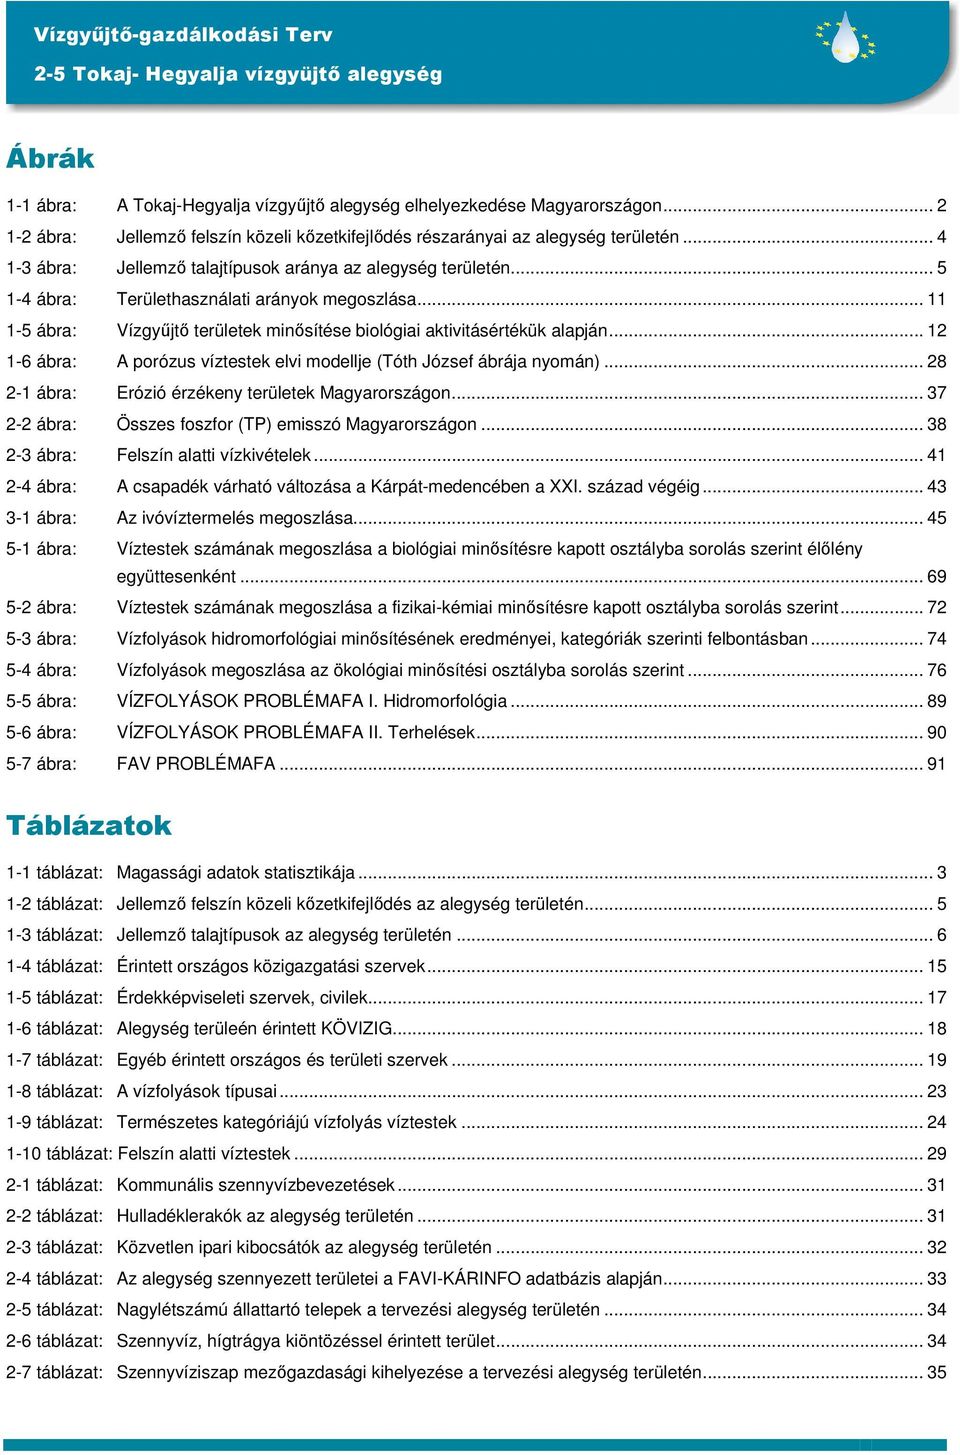 .. 12 1-6 ábra: A porózus víztestek elvi modellje (Tóth József ábrája nyomán)... 28 2-1 ábra: Erózió érzékeny területek Magyarországon... 37 2-2 ábra: Összes foszfor (TP) emisszó Magyarországon.